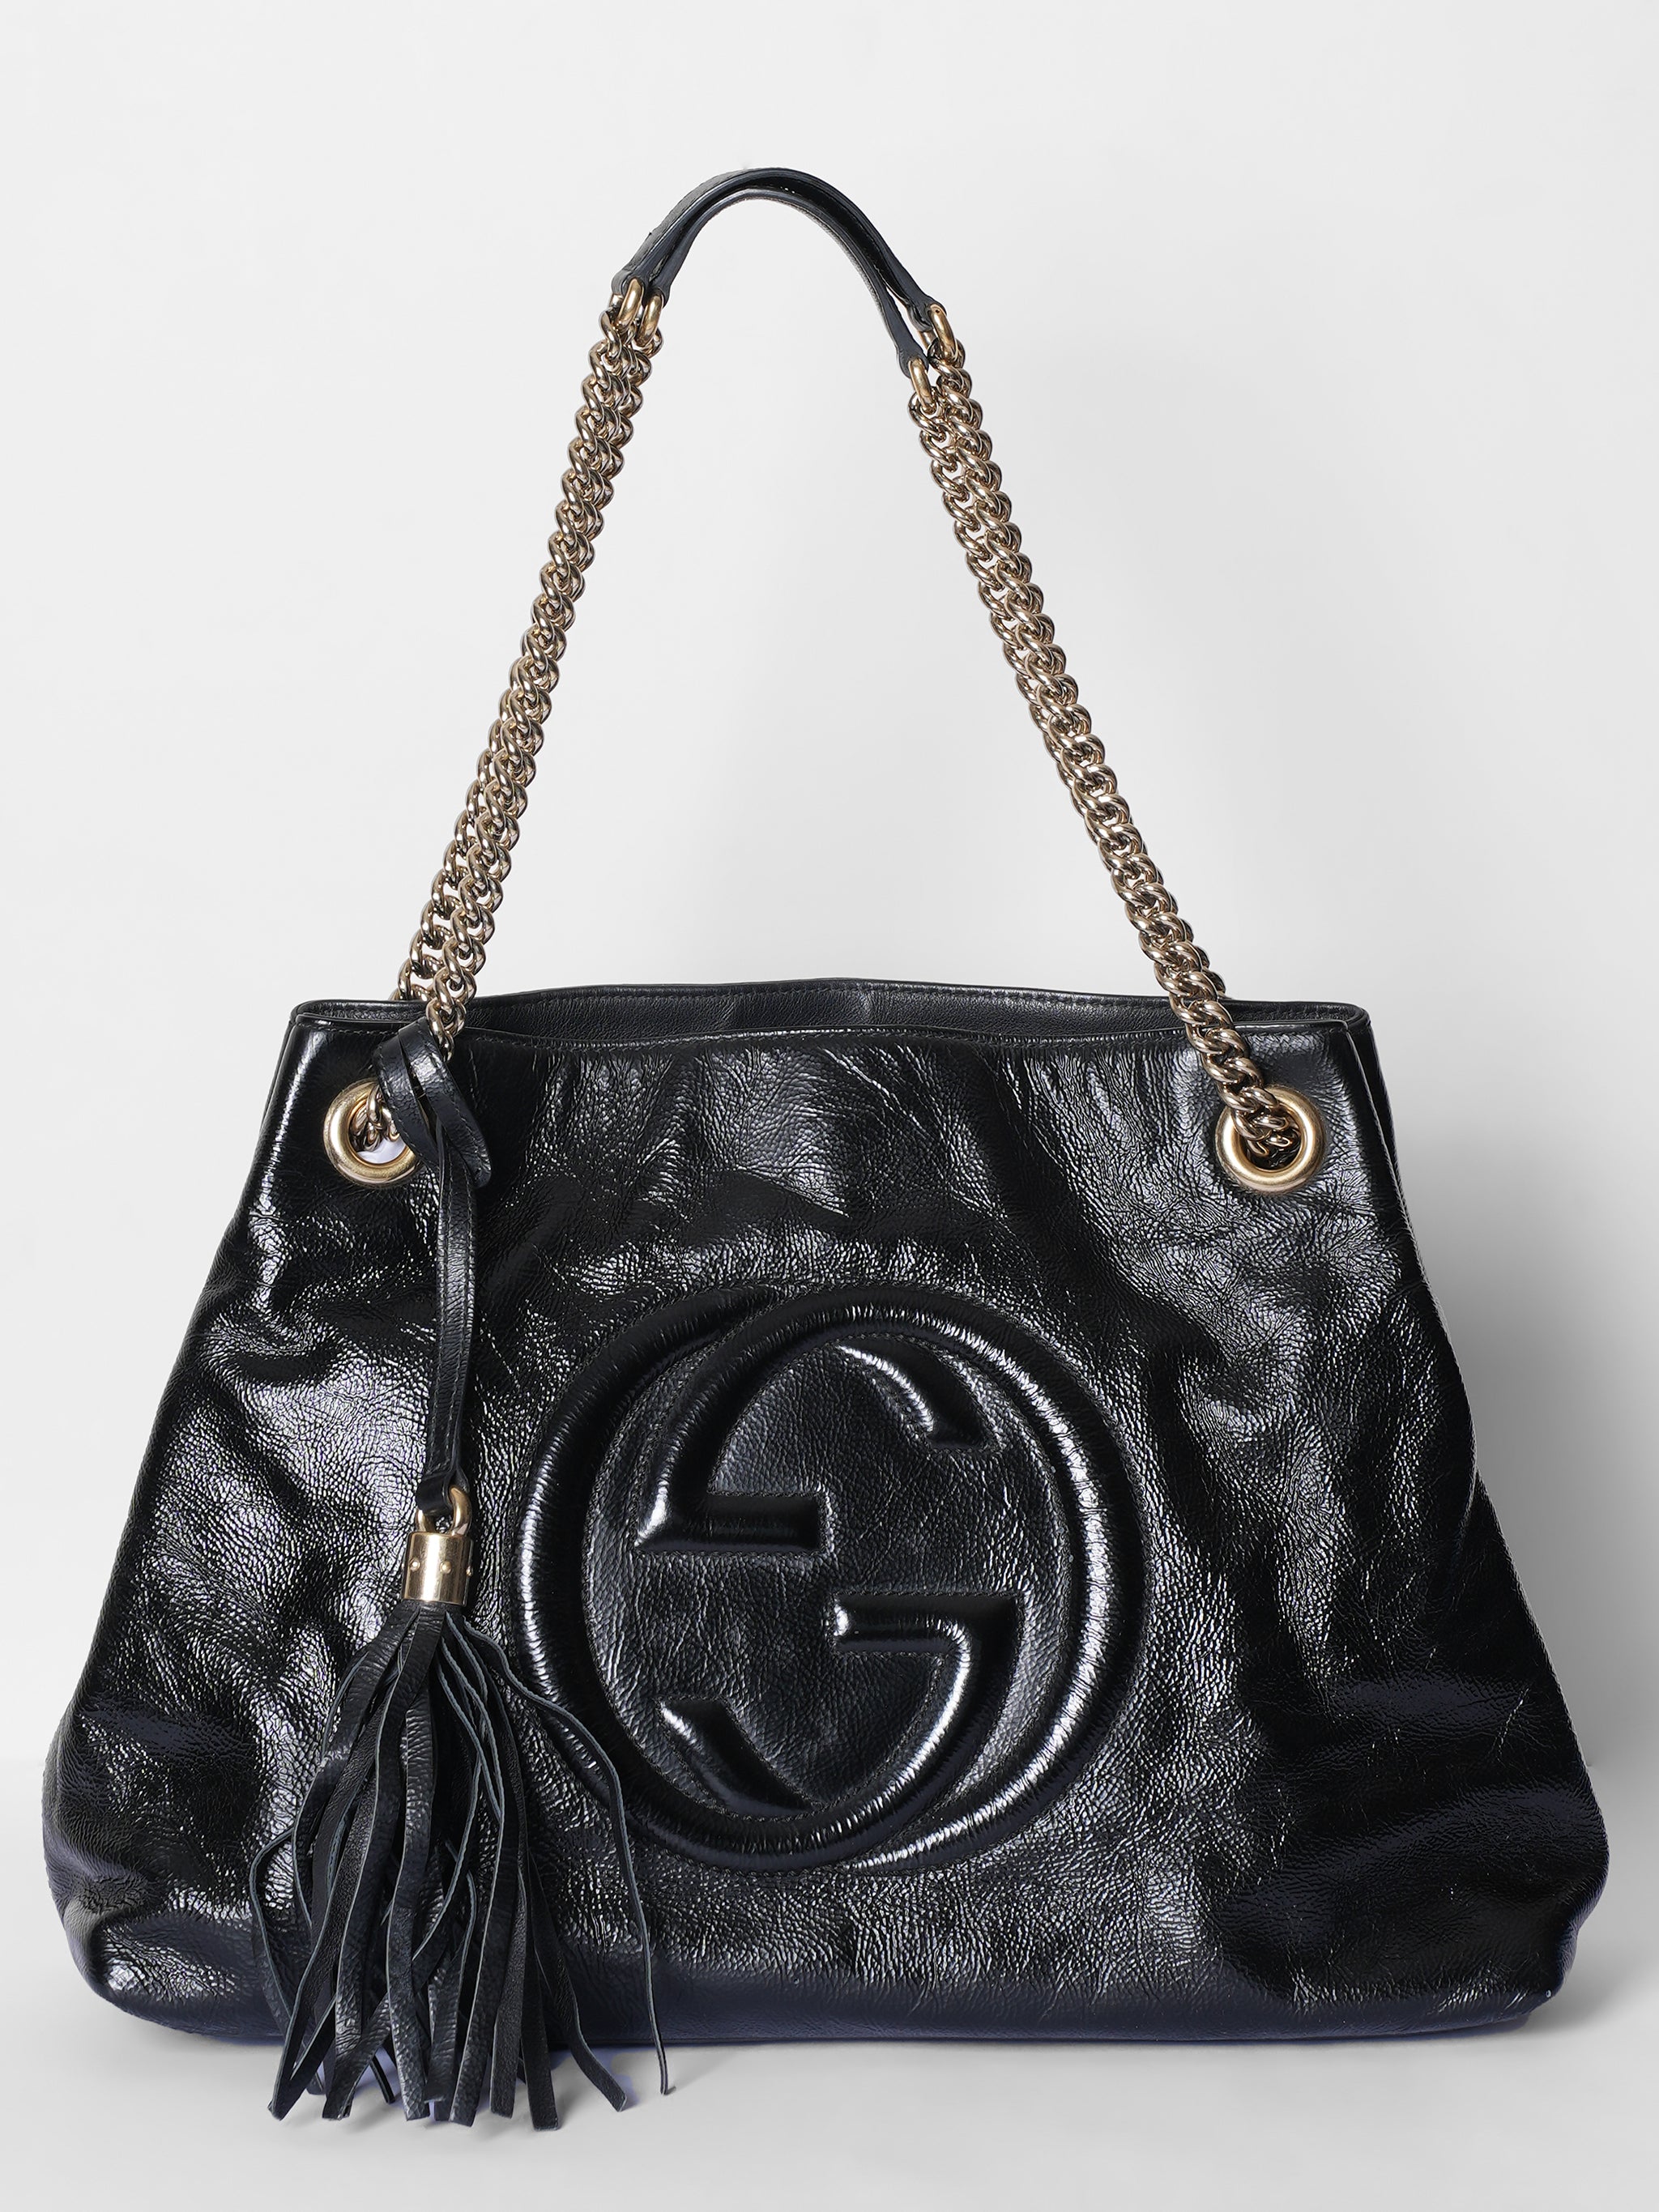 Gucci Soho Leather Black Shoulder Bag